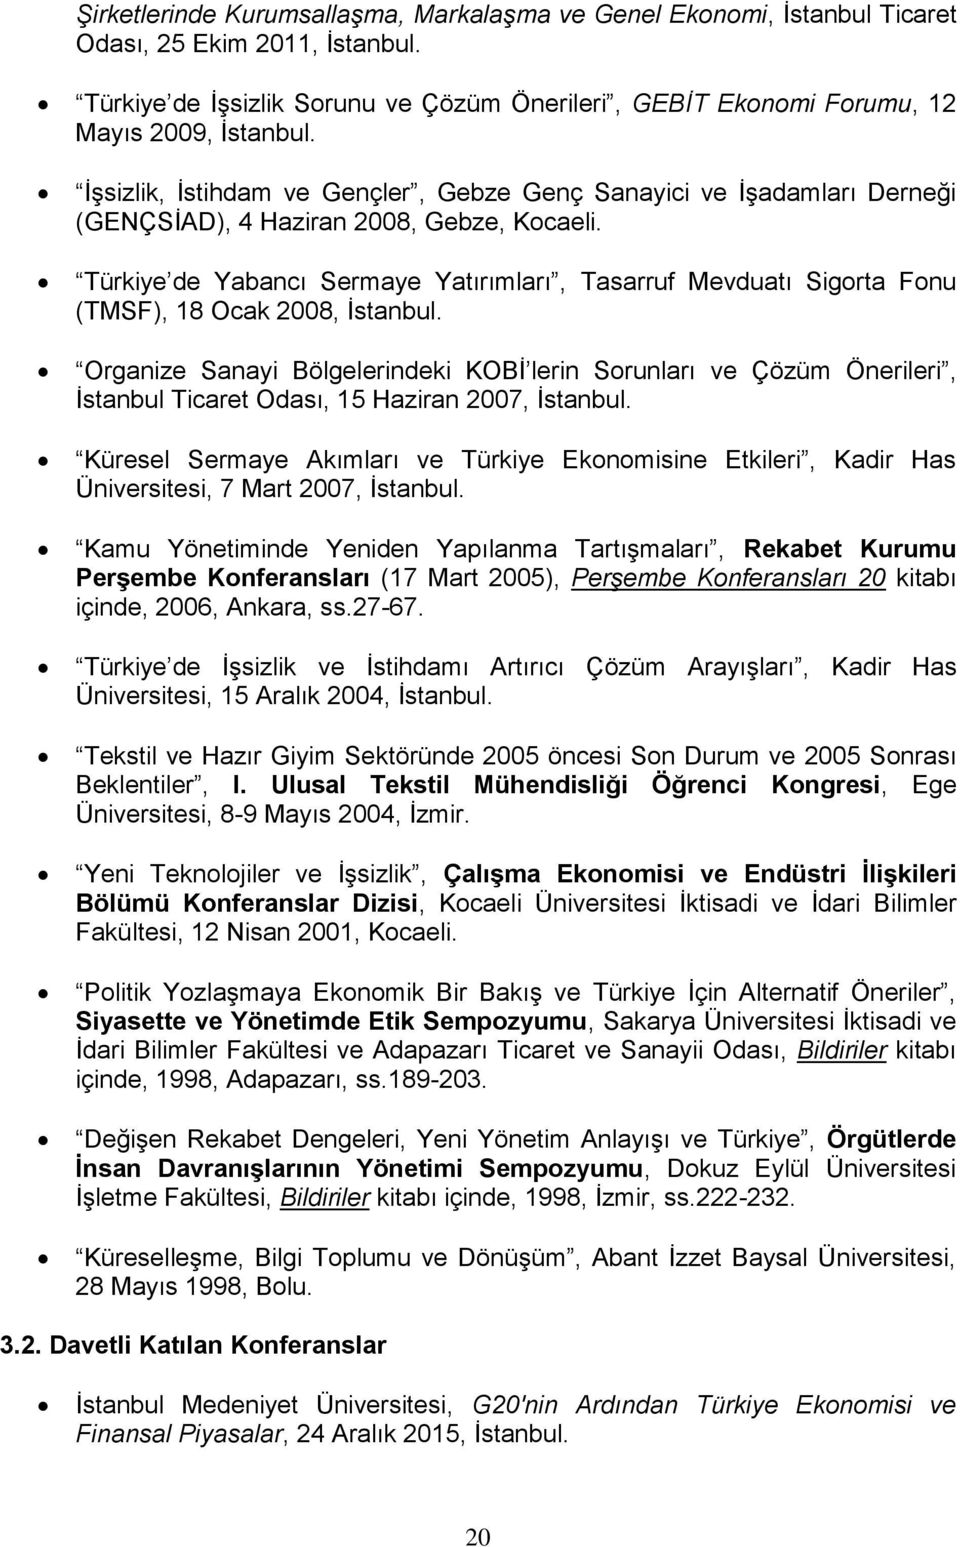 Türkiye de Yabancı Sermaye Yatırımları, Tasarruf Mevduatı Sigorta Fonu (TMSF), 18 Ocak 2008, İstanbul.